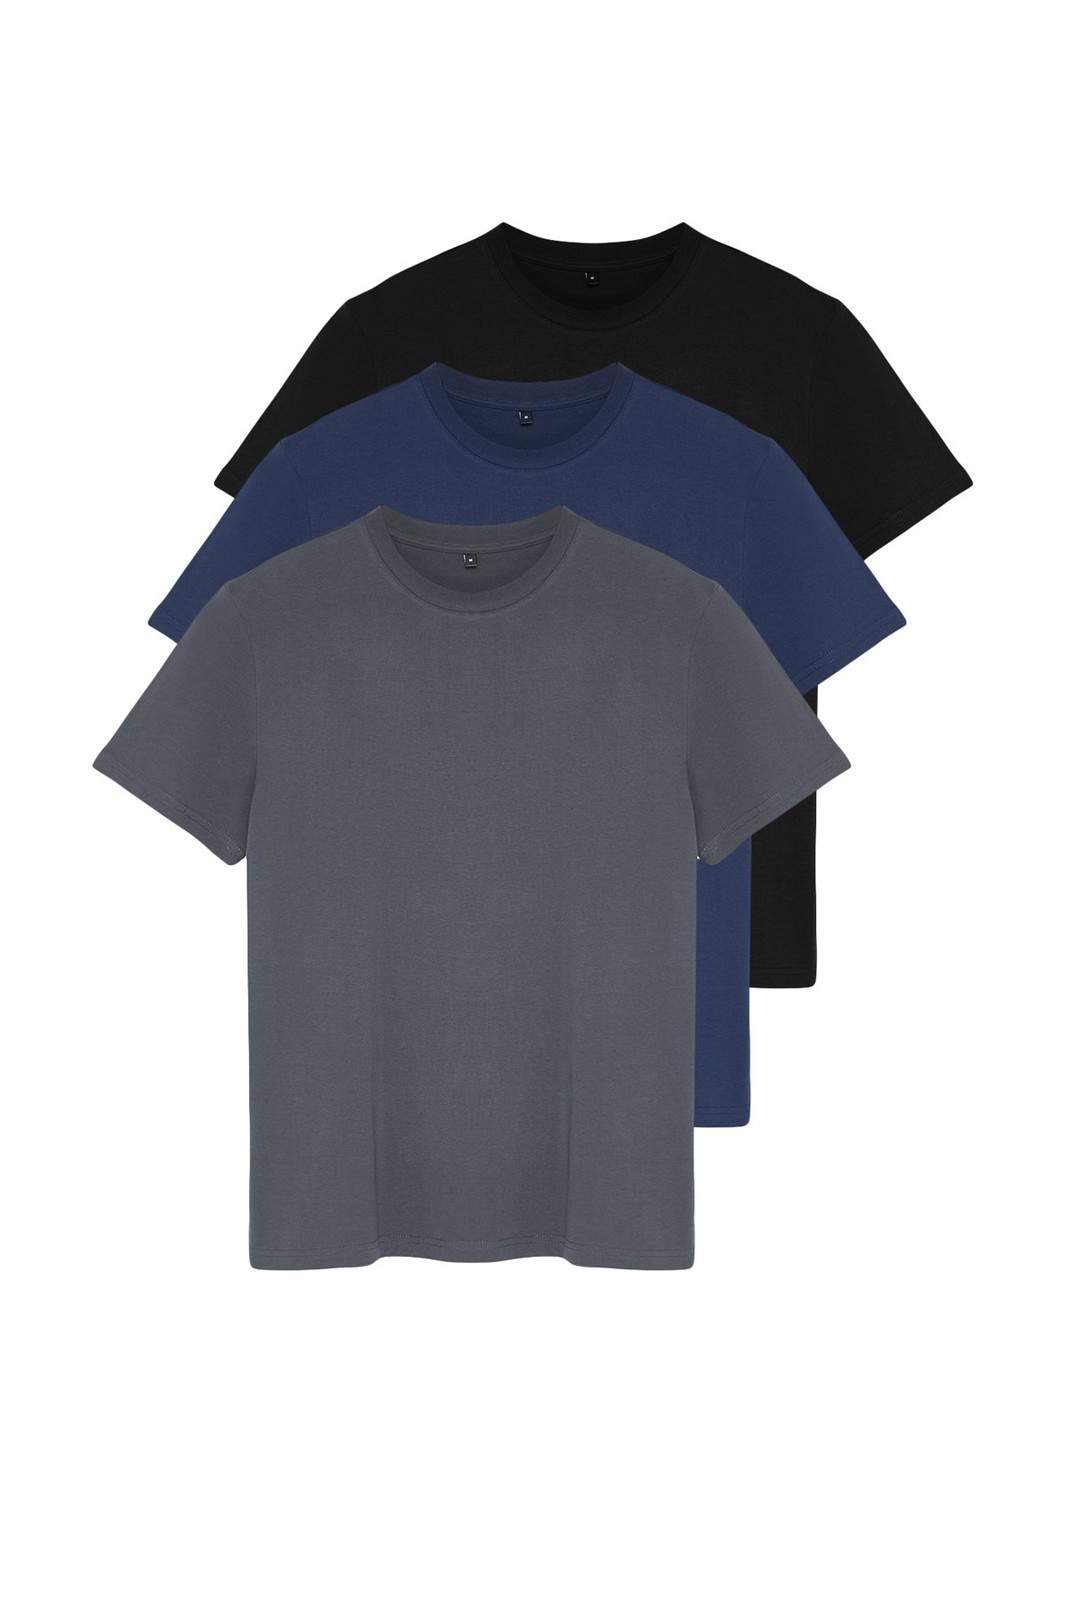 Trendyol Black-Navy-Anthracite Men's Regular/Normal Cut 3 Pack Basic T-Shirt